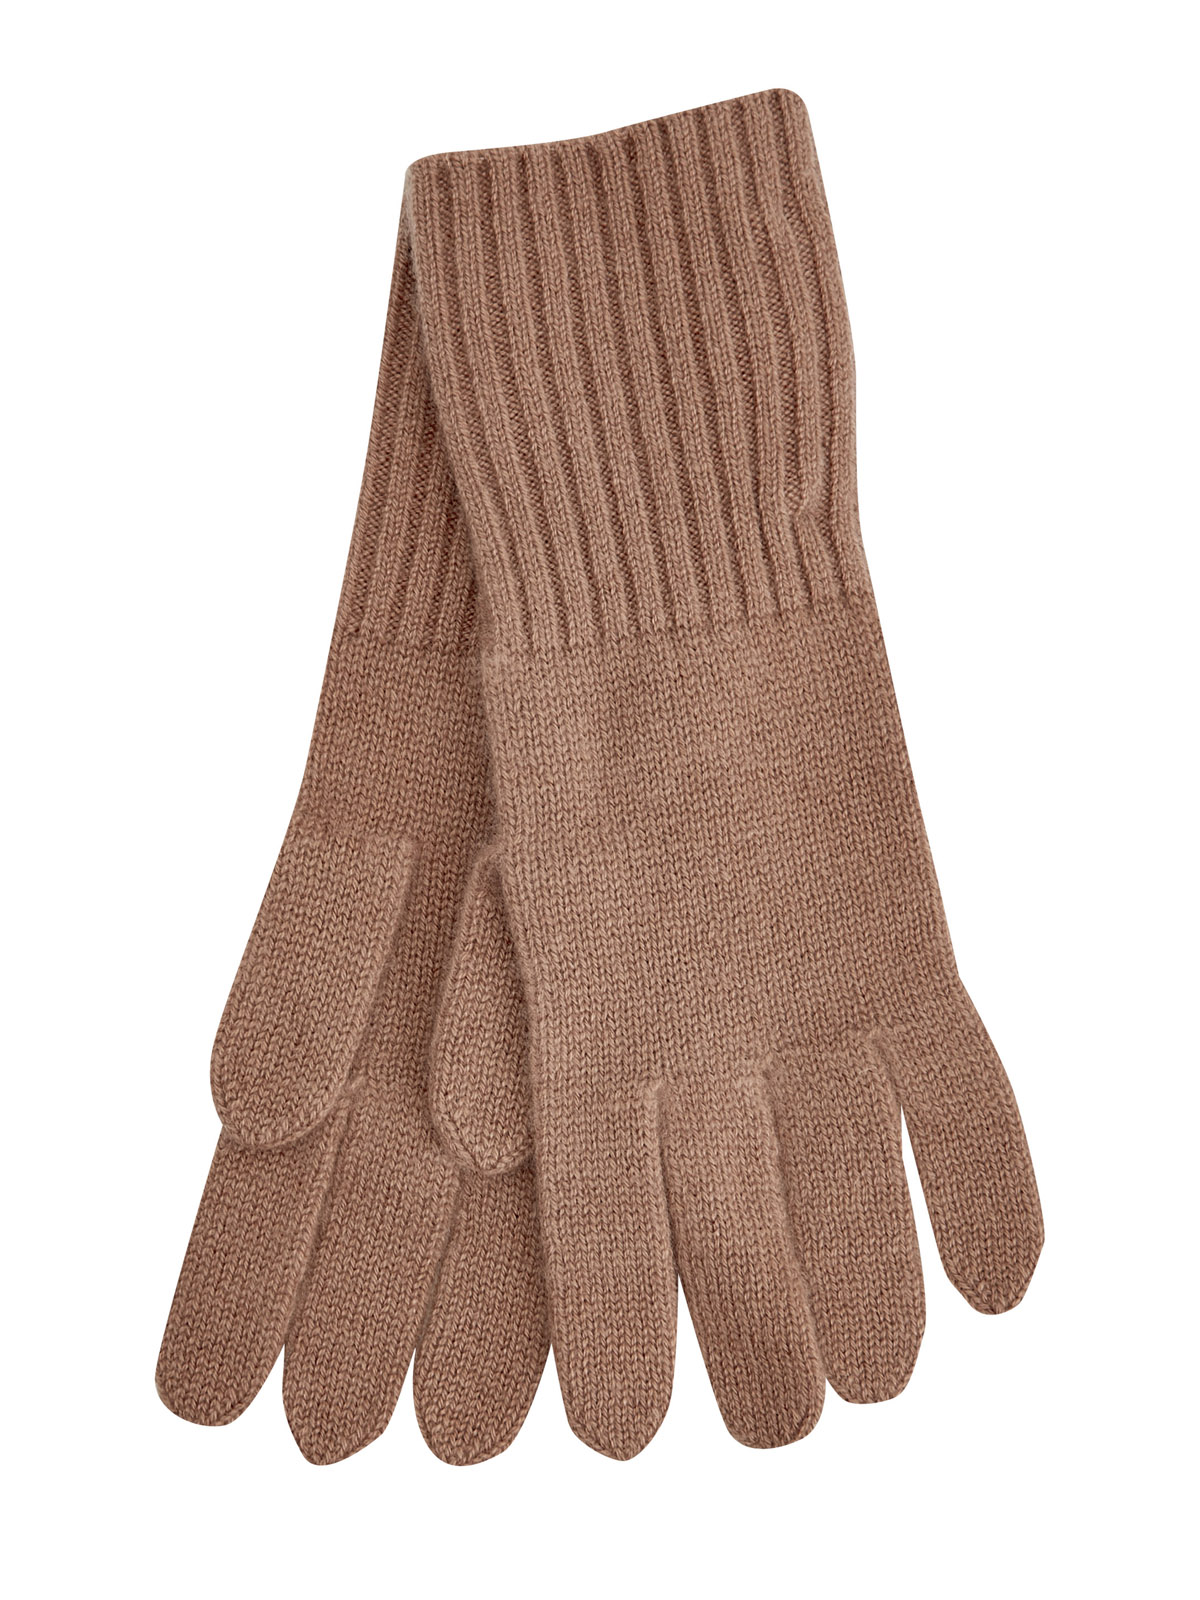 Перчатки из мягкого кашемира с манжетами английской вязки RE VERA, цвет коричневый, размер M;L;XL